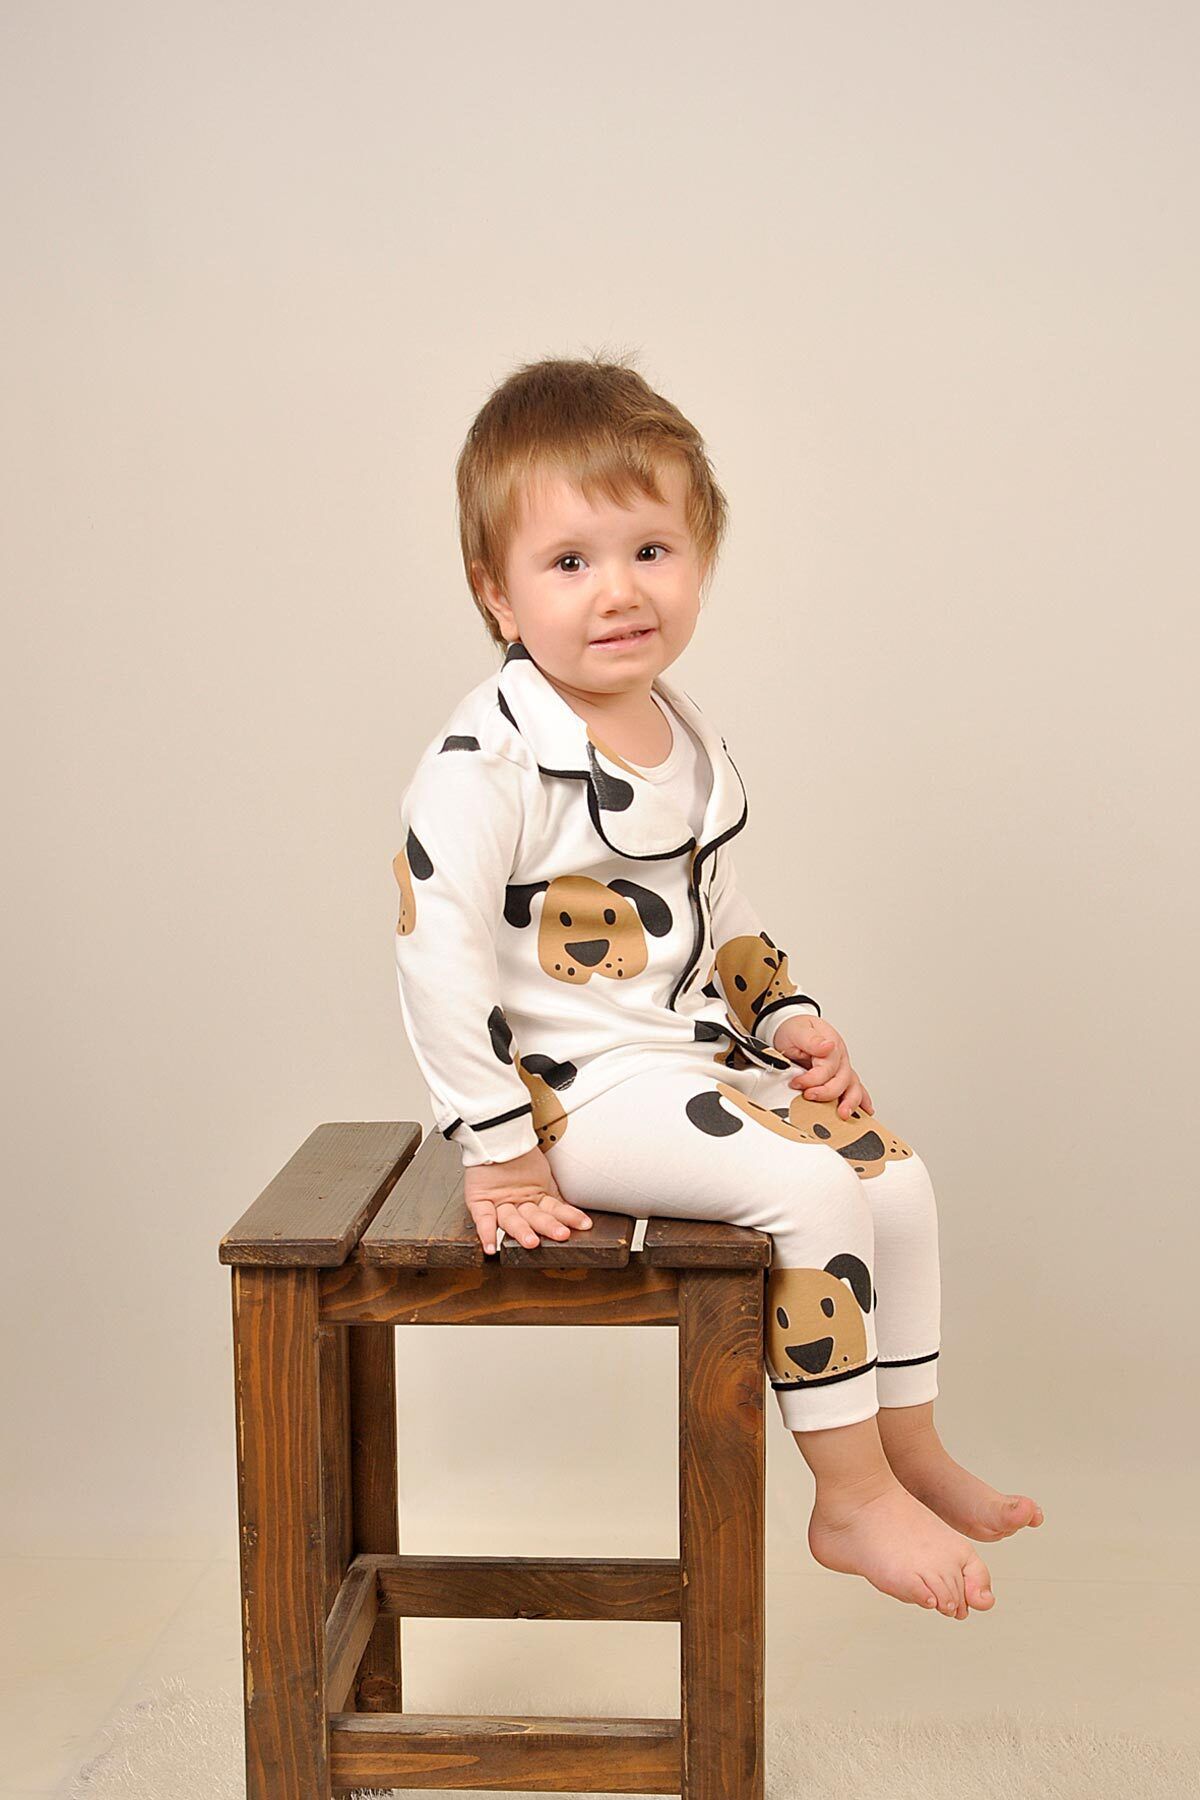 Peki Bebek 5al4öde Çocuk Pamuklu Köpek Cepli Ahsap Dügmeli Ceket Yaka Siyah Biyeli Pijama Takimi 14734